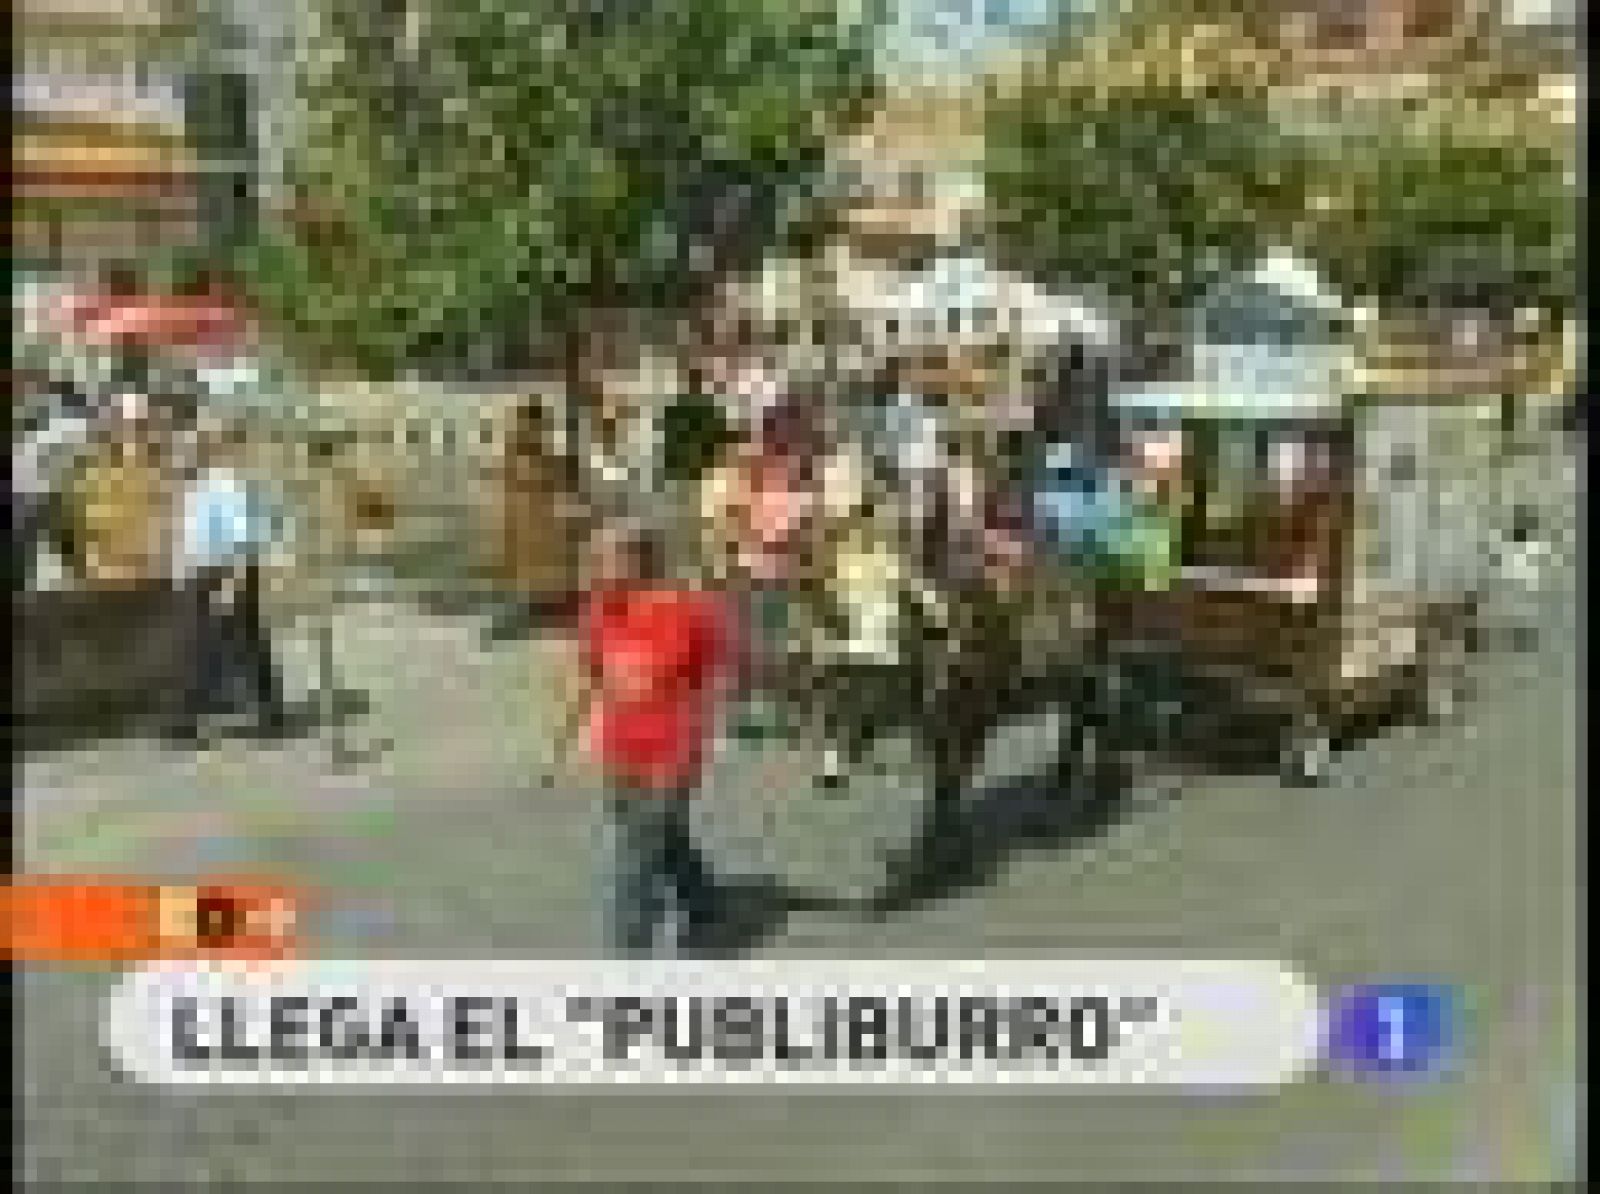 España Directo: Cirilo, el "publi-burro" | RTVE Play